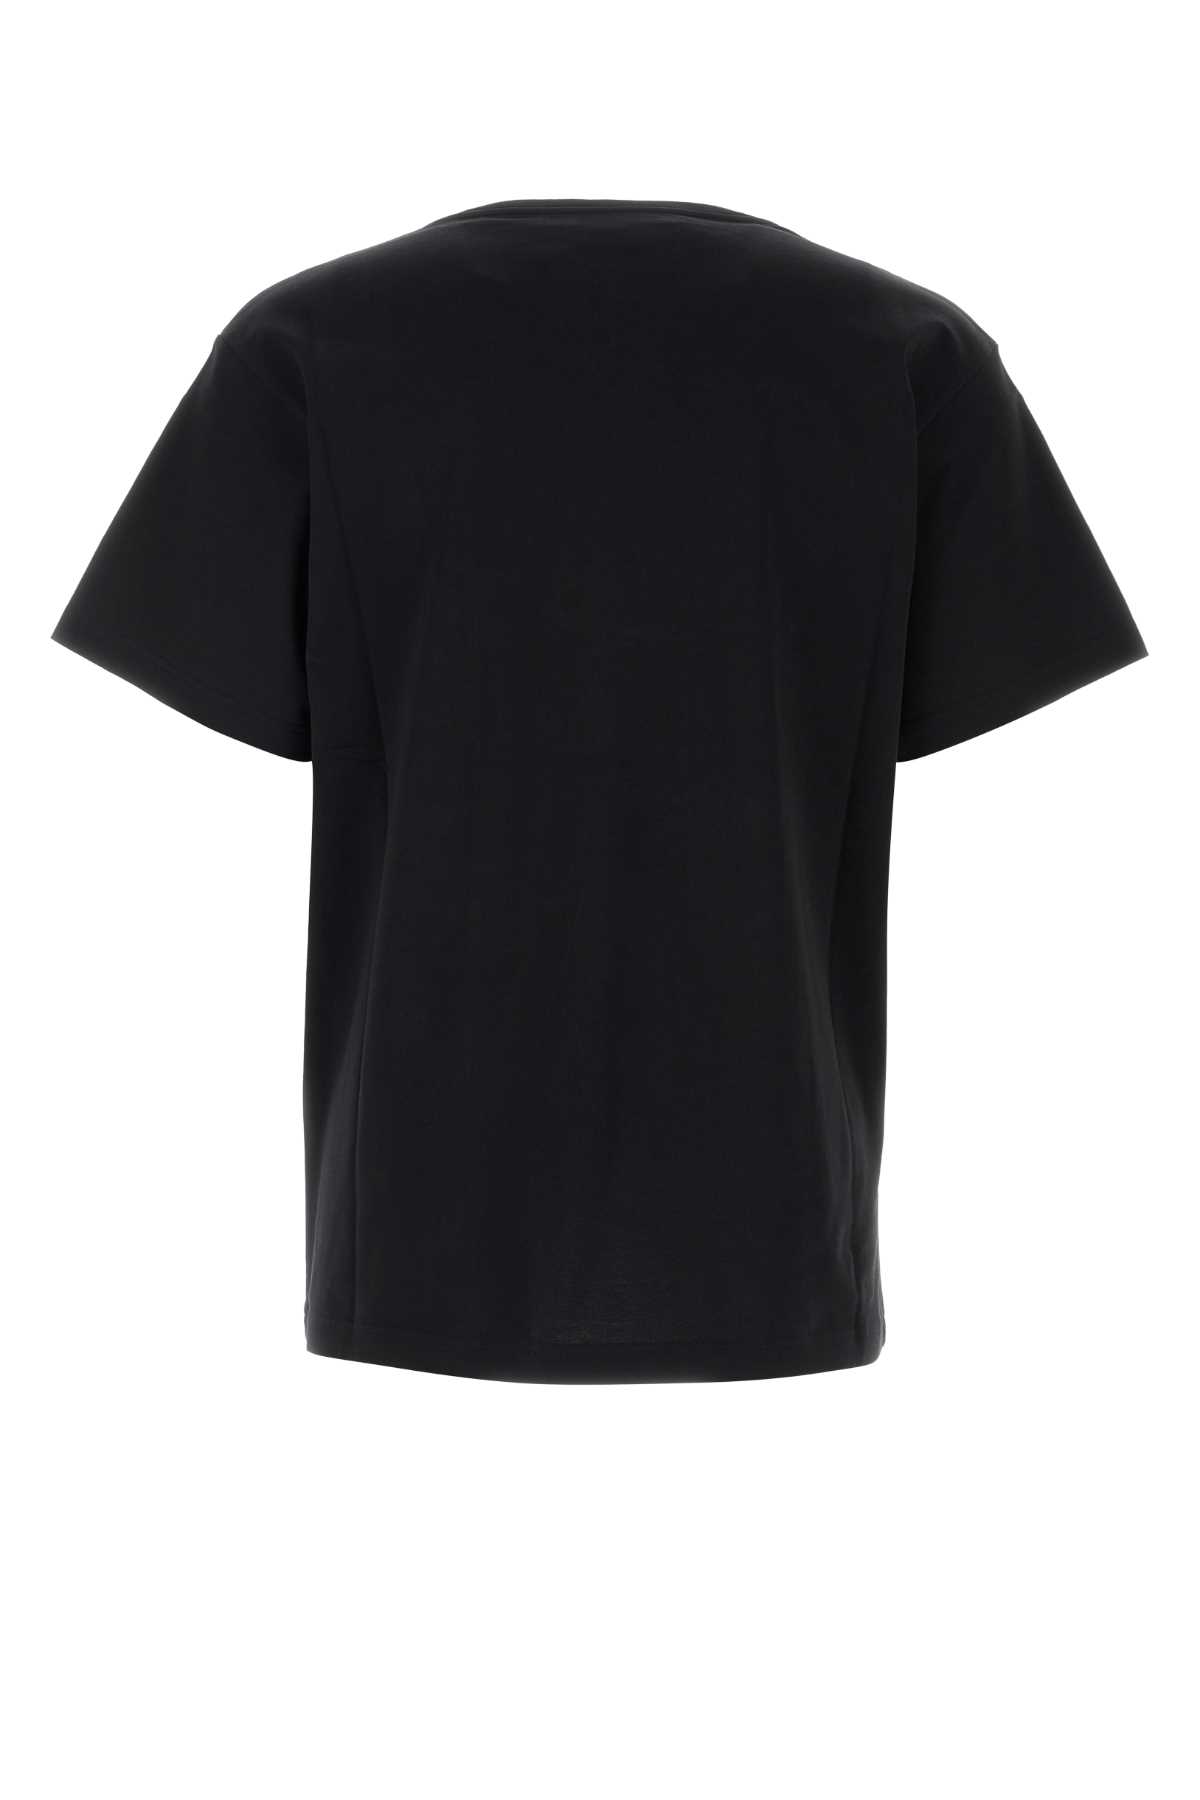 Y/project Black Cotton T-shirt